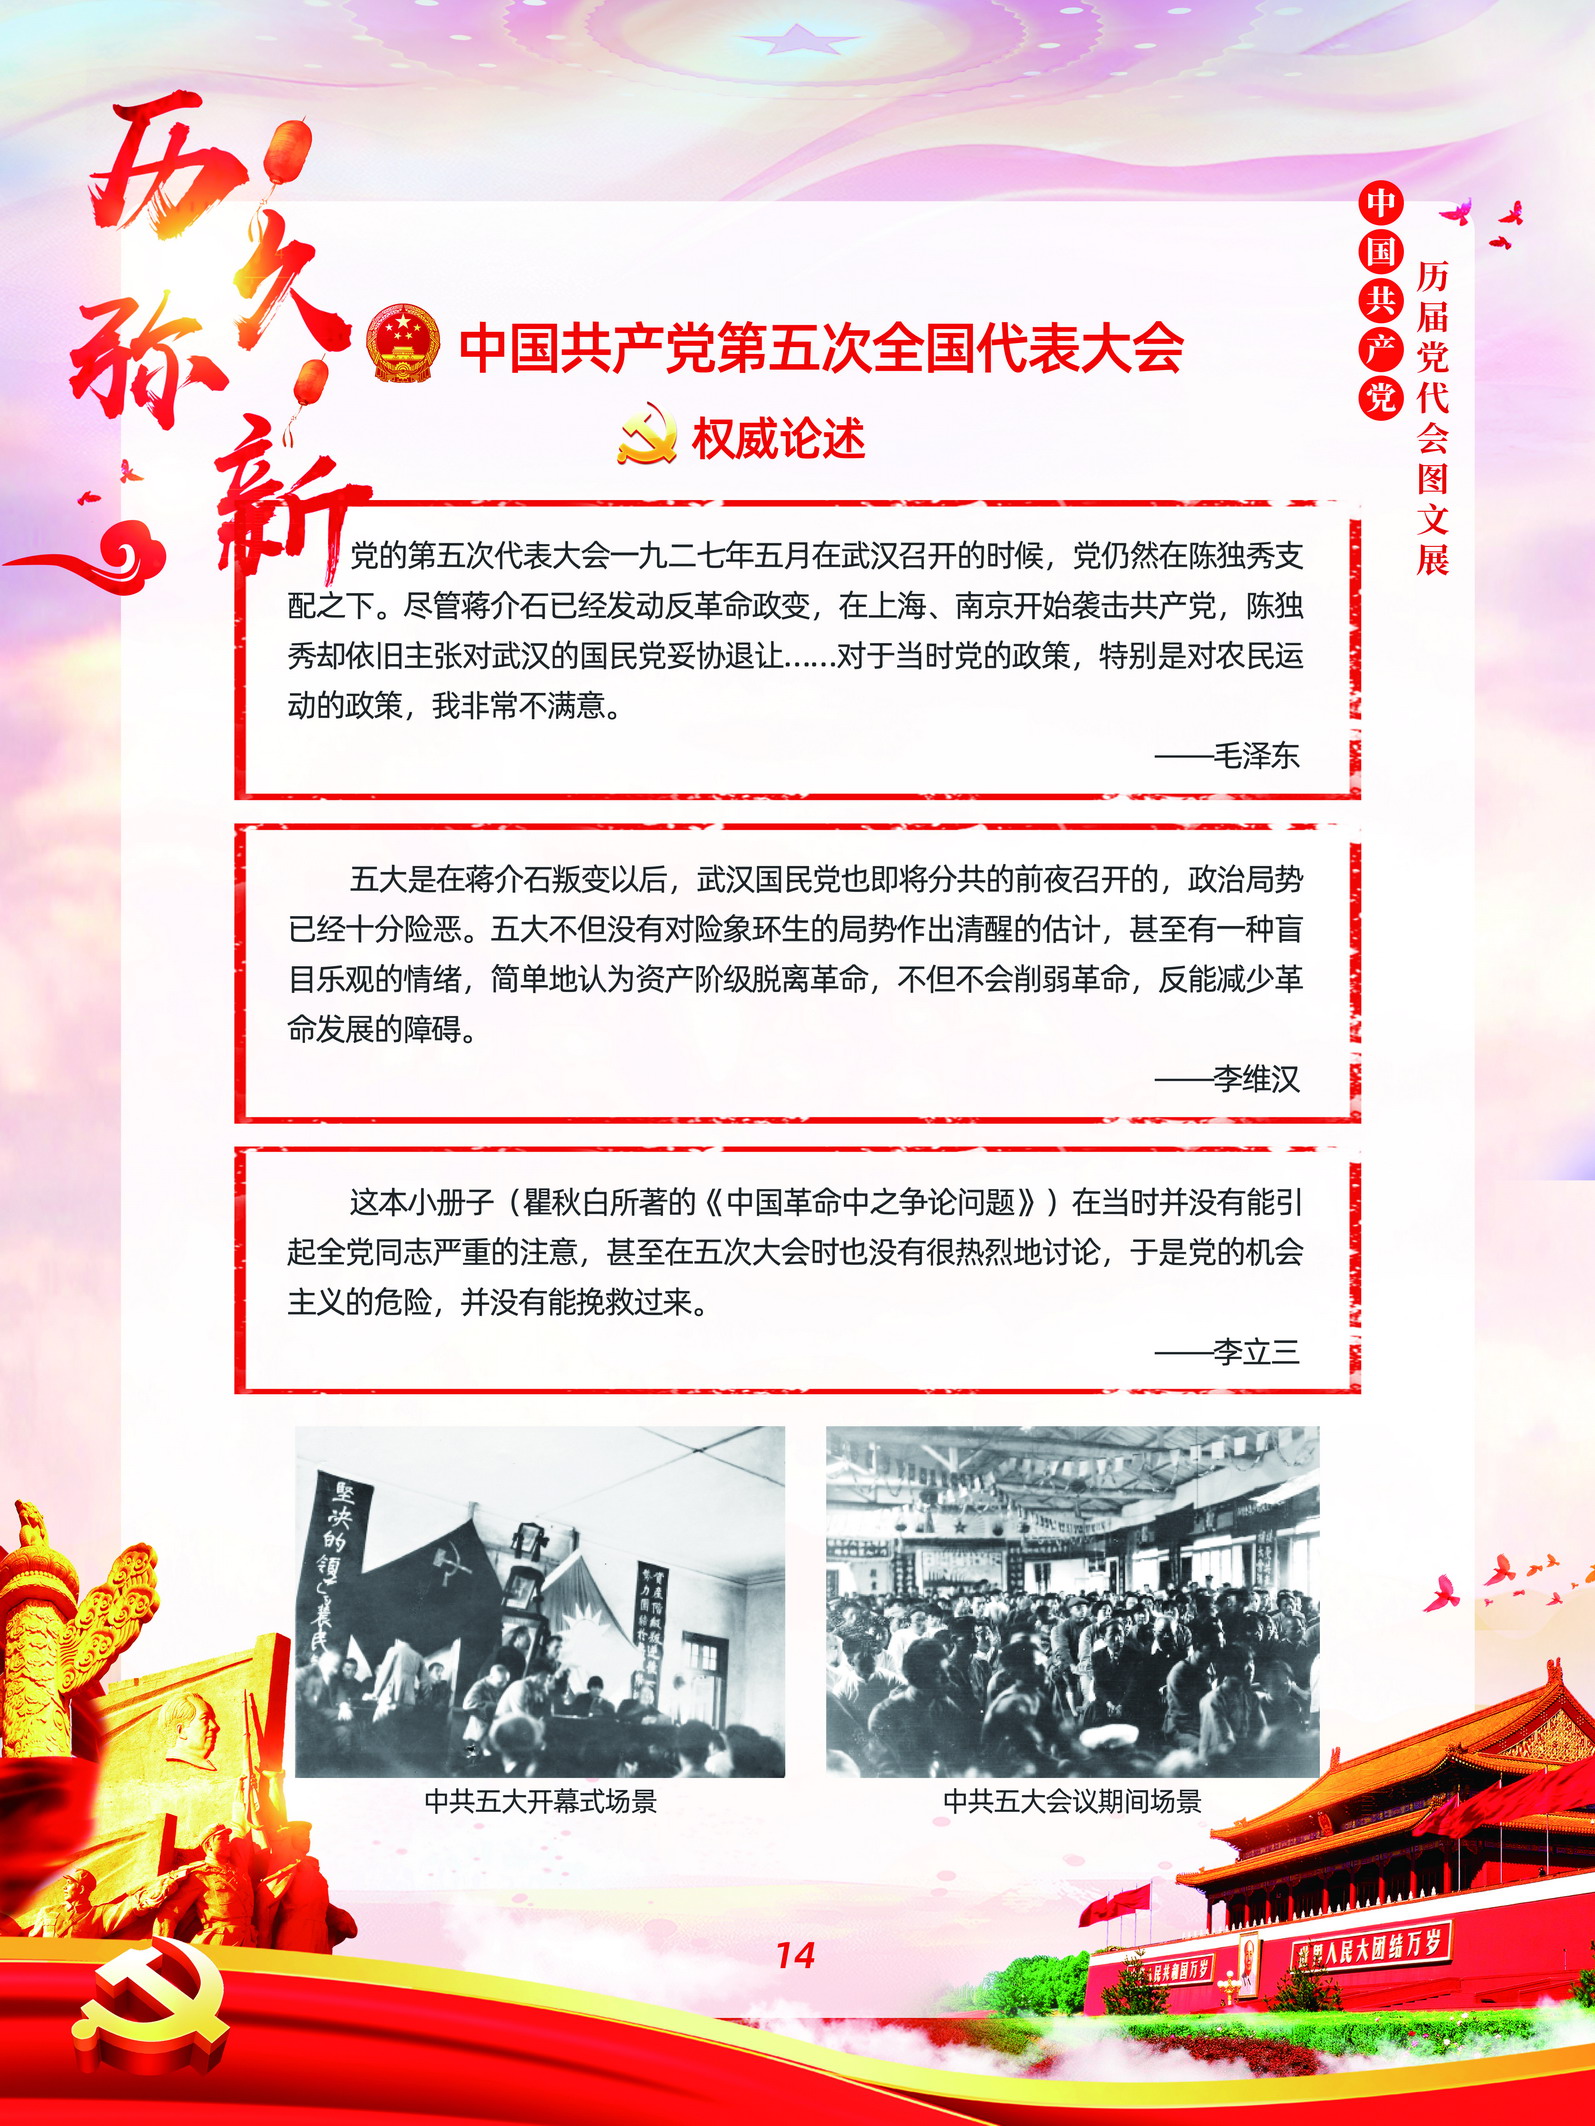 中国共产党历届党代会图文展_图13